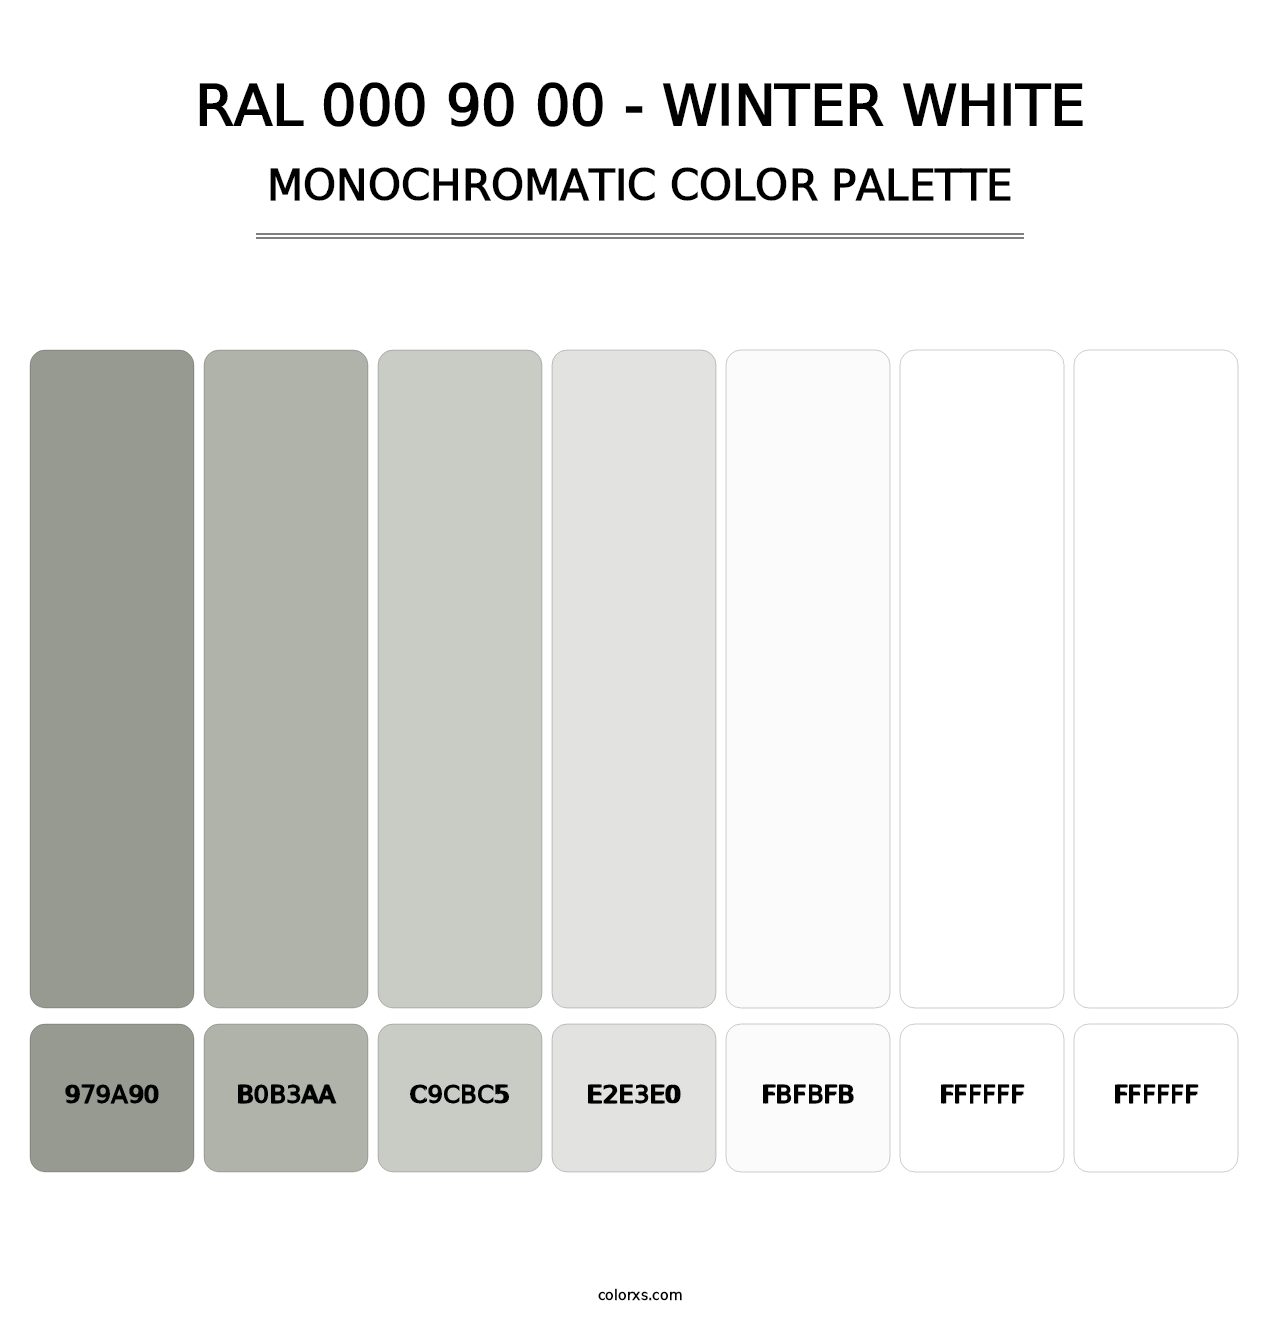 RAL 000 90 00 - Winter White - Monochromatic Color Palette